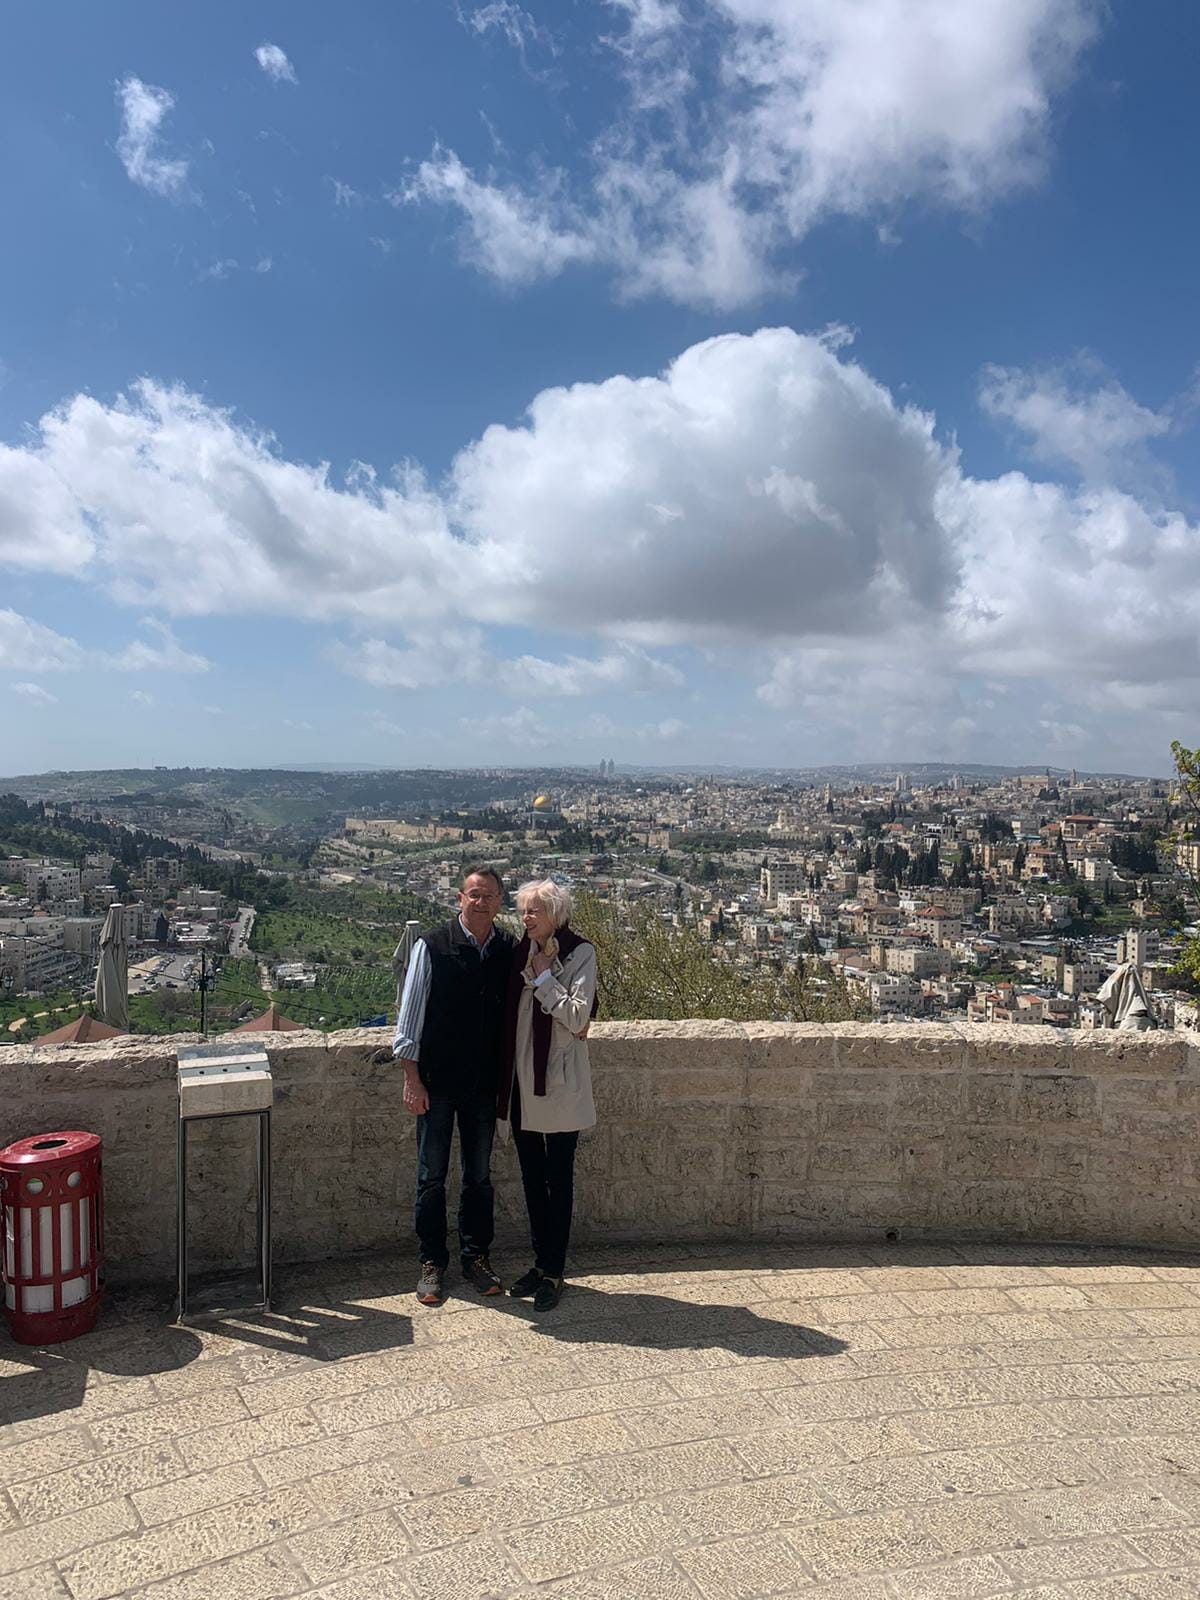 הדרכת תיירים מגרמניה VIP תצפית הר הזיתים על העיר העתיקה ירושלים